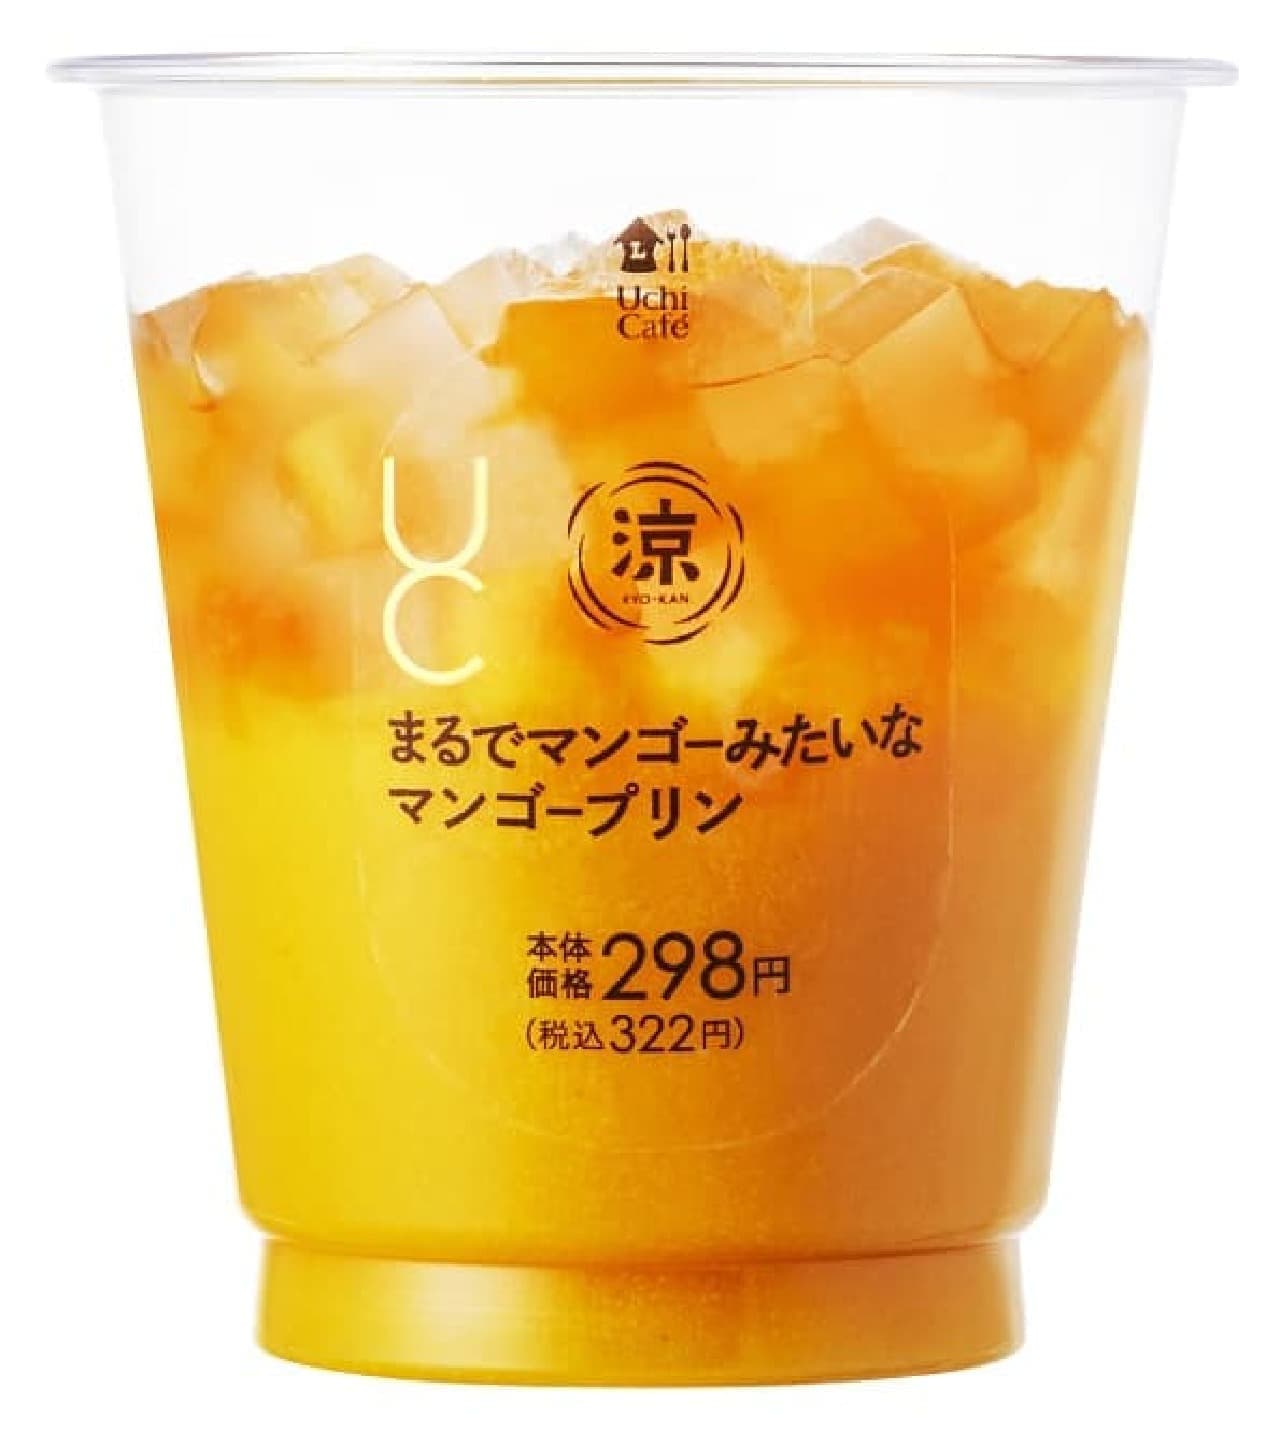 ローソン「Uchi Cafe まるでマンゴーみたいなマンゴープリン」